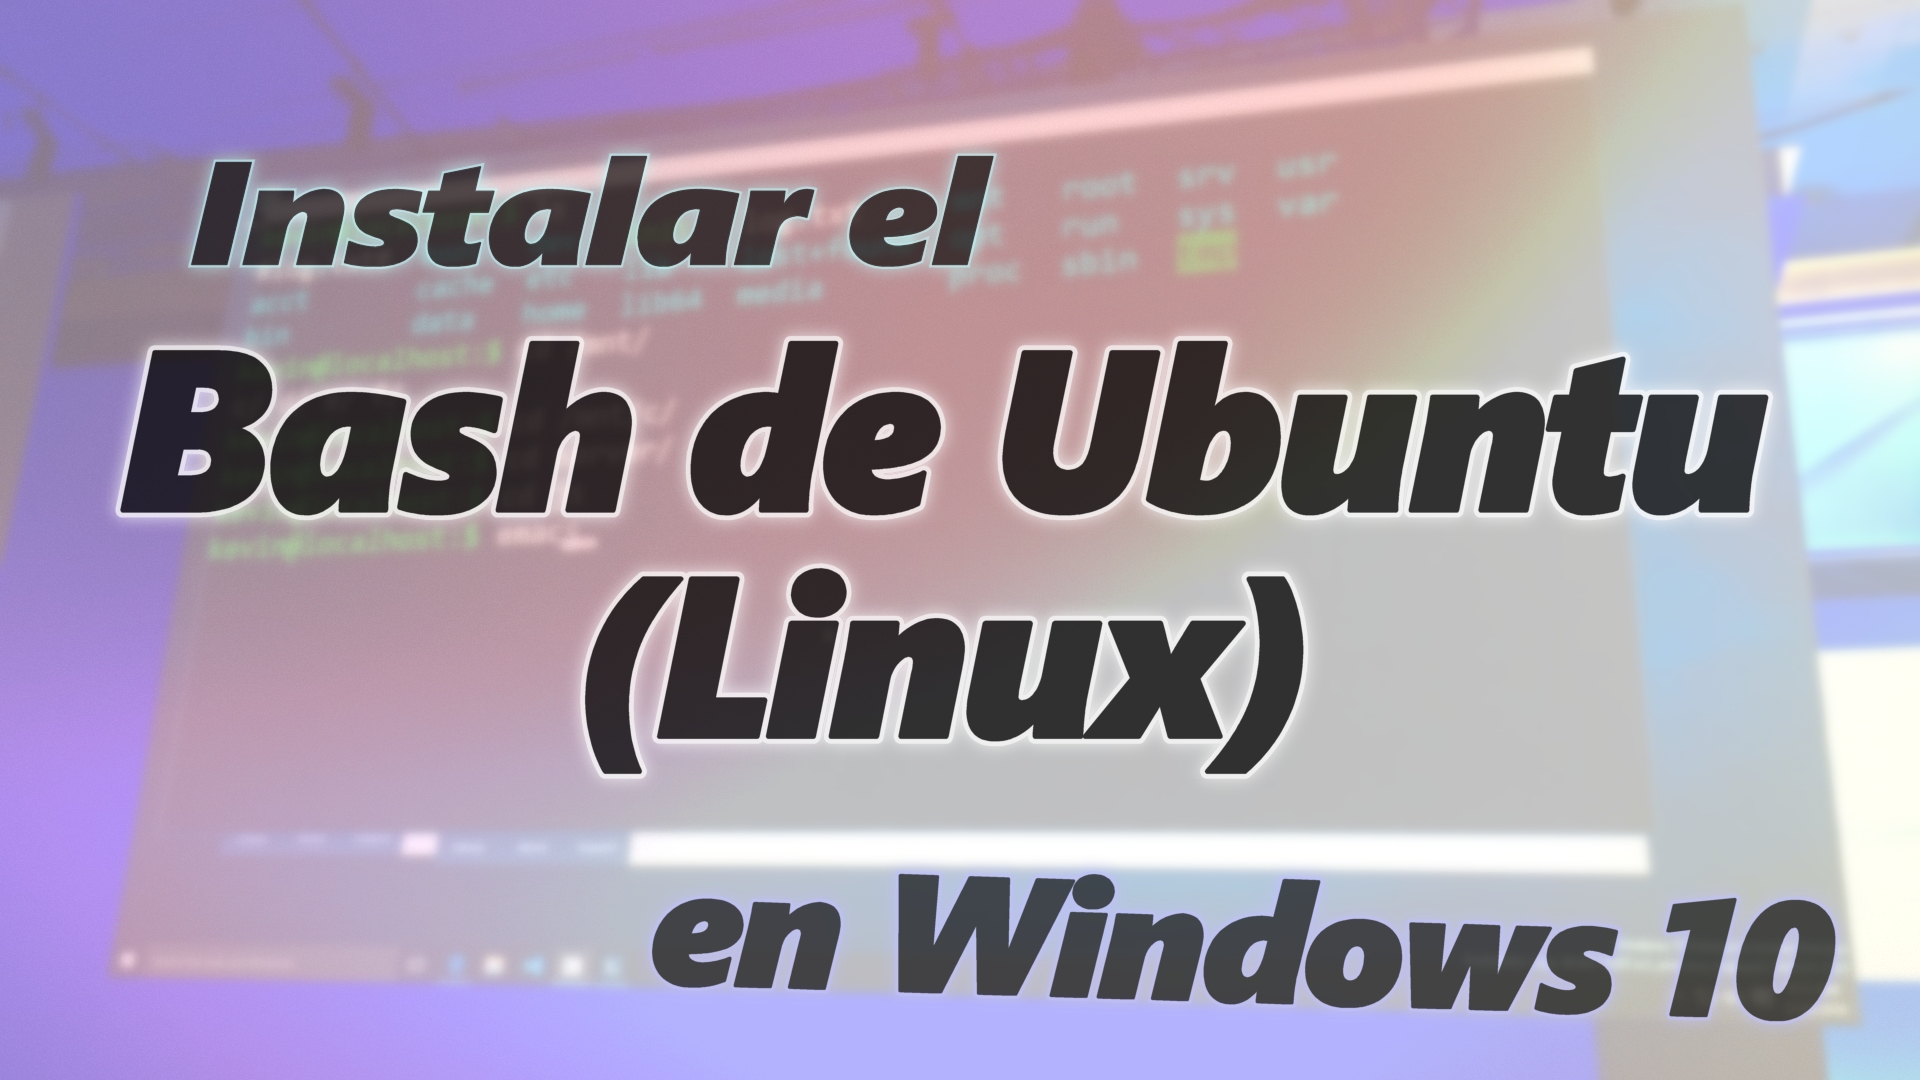 Instalar el Bash de Ubuntu (Linux) en Windows 10